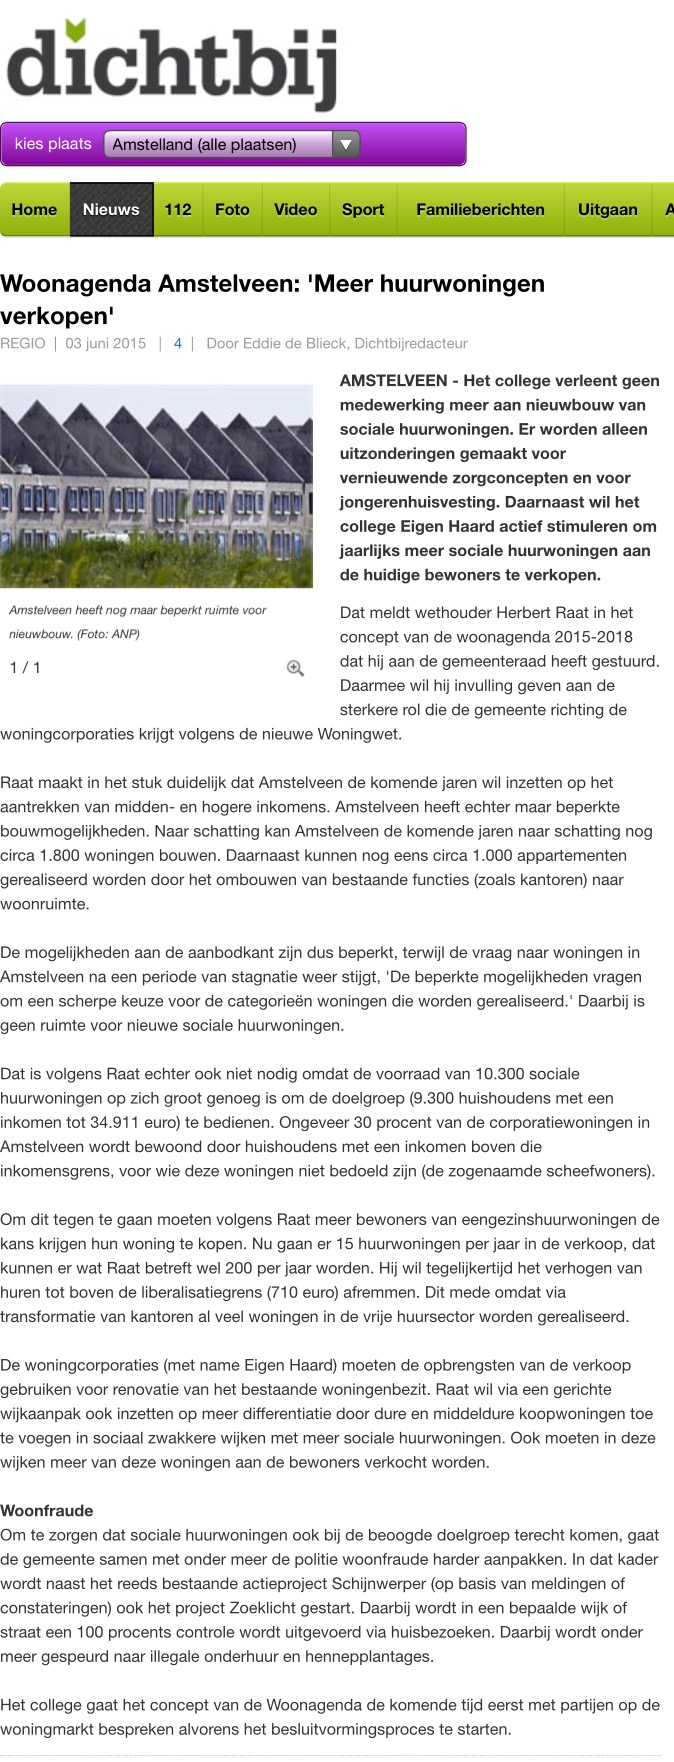 2015-3 juni Amstelveendichtbij; Herbert Raat over woonagenda Amstelveen